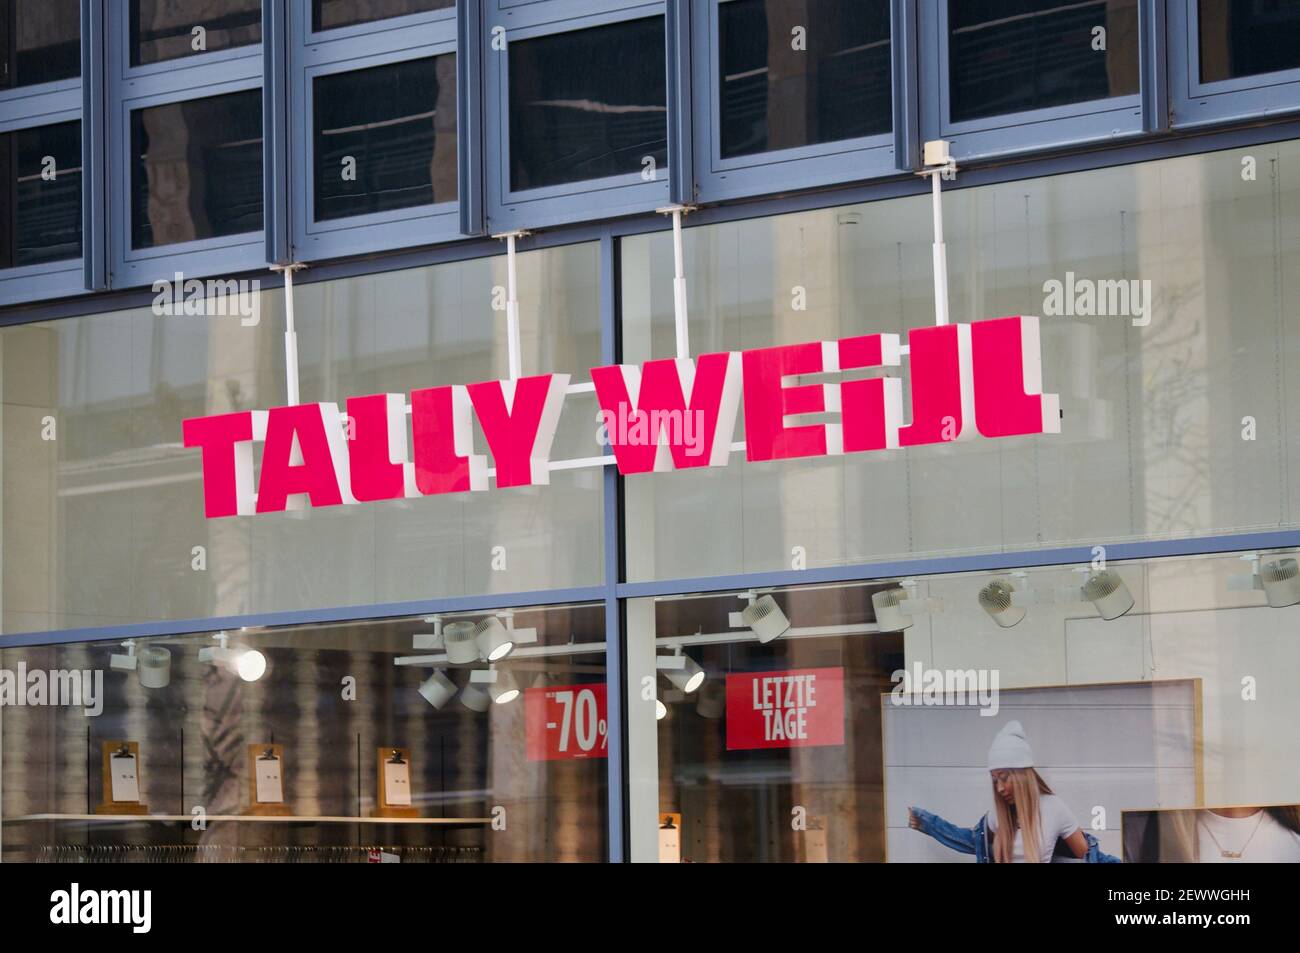 Zug, Suisse - 26 février 2021 : panneau Tally Weijl suspendu devant le magasin de Zug, Suisse. Tally Weijl est une fash suisse Banque D'Images